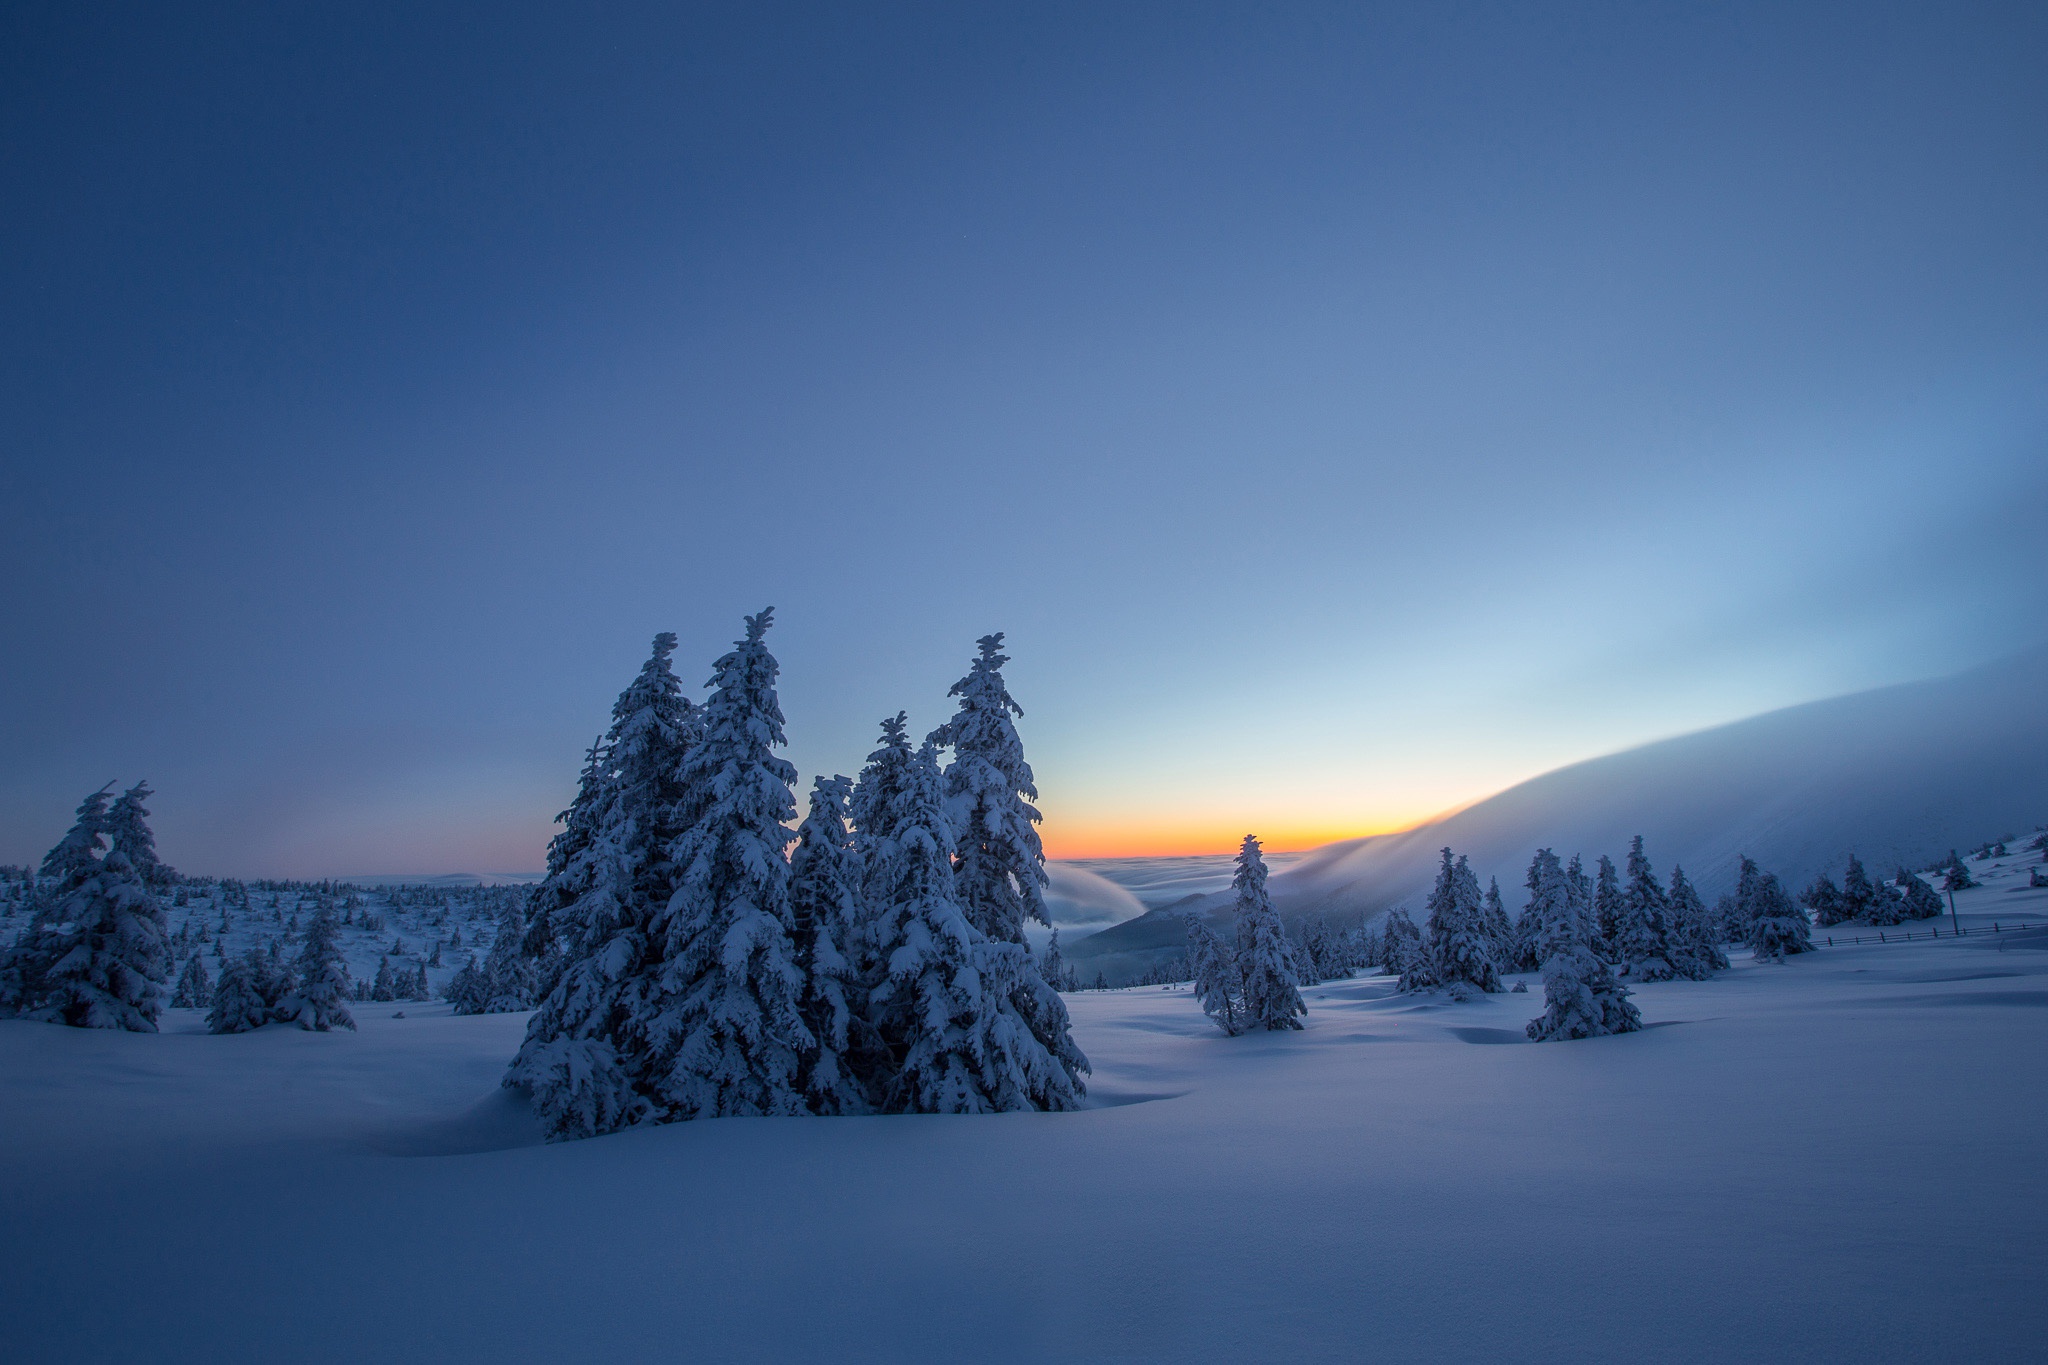 Скачать обои бесплатно Зима, Природа, Снег, Дерево, Ландшафт, Восход Солнца, Земля/природа картинка на рабочий стол ПК